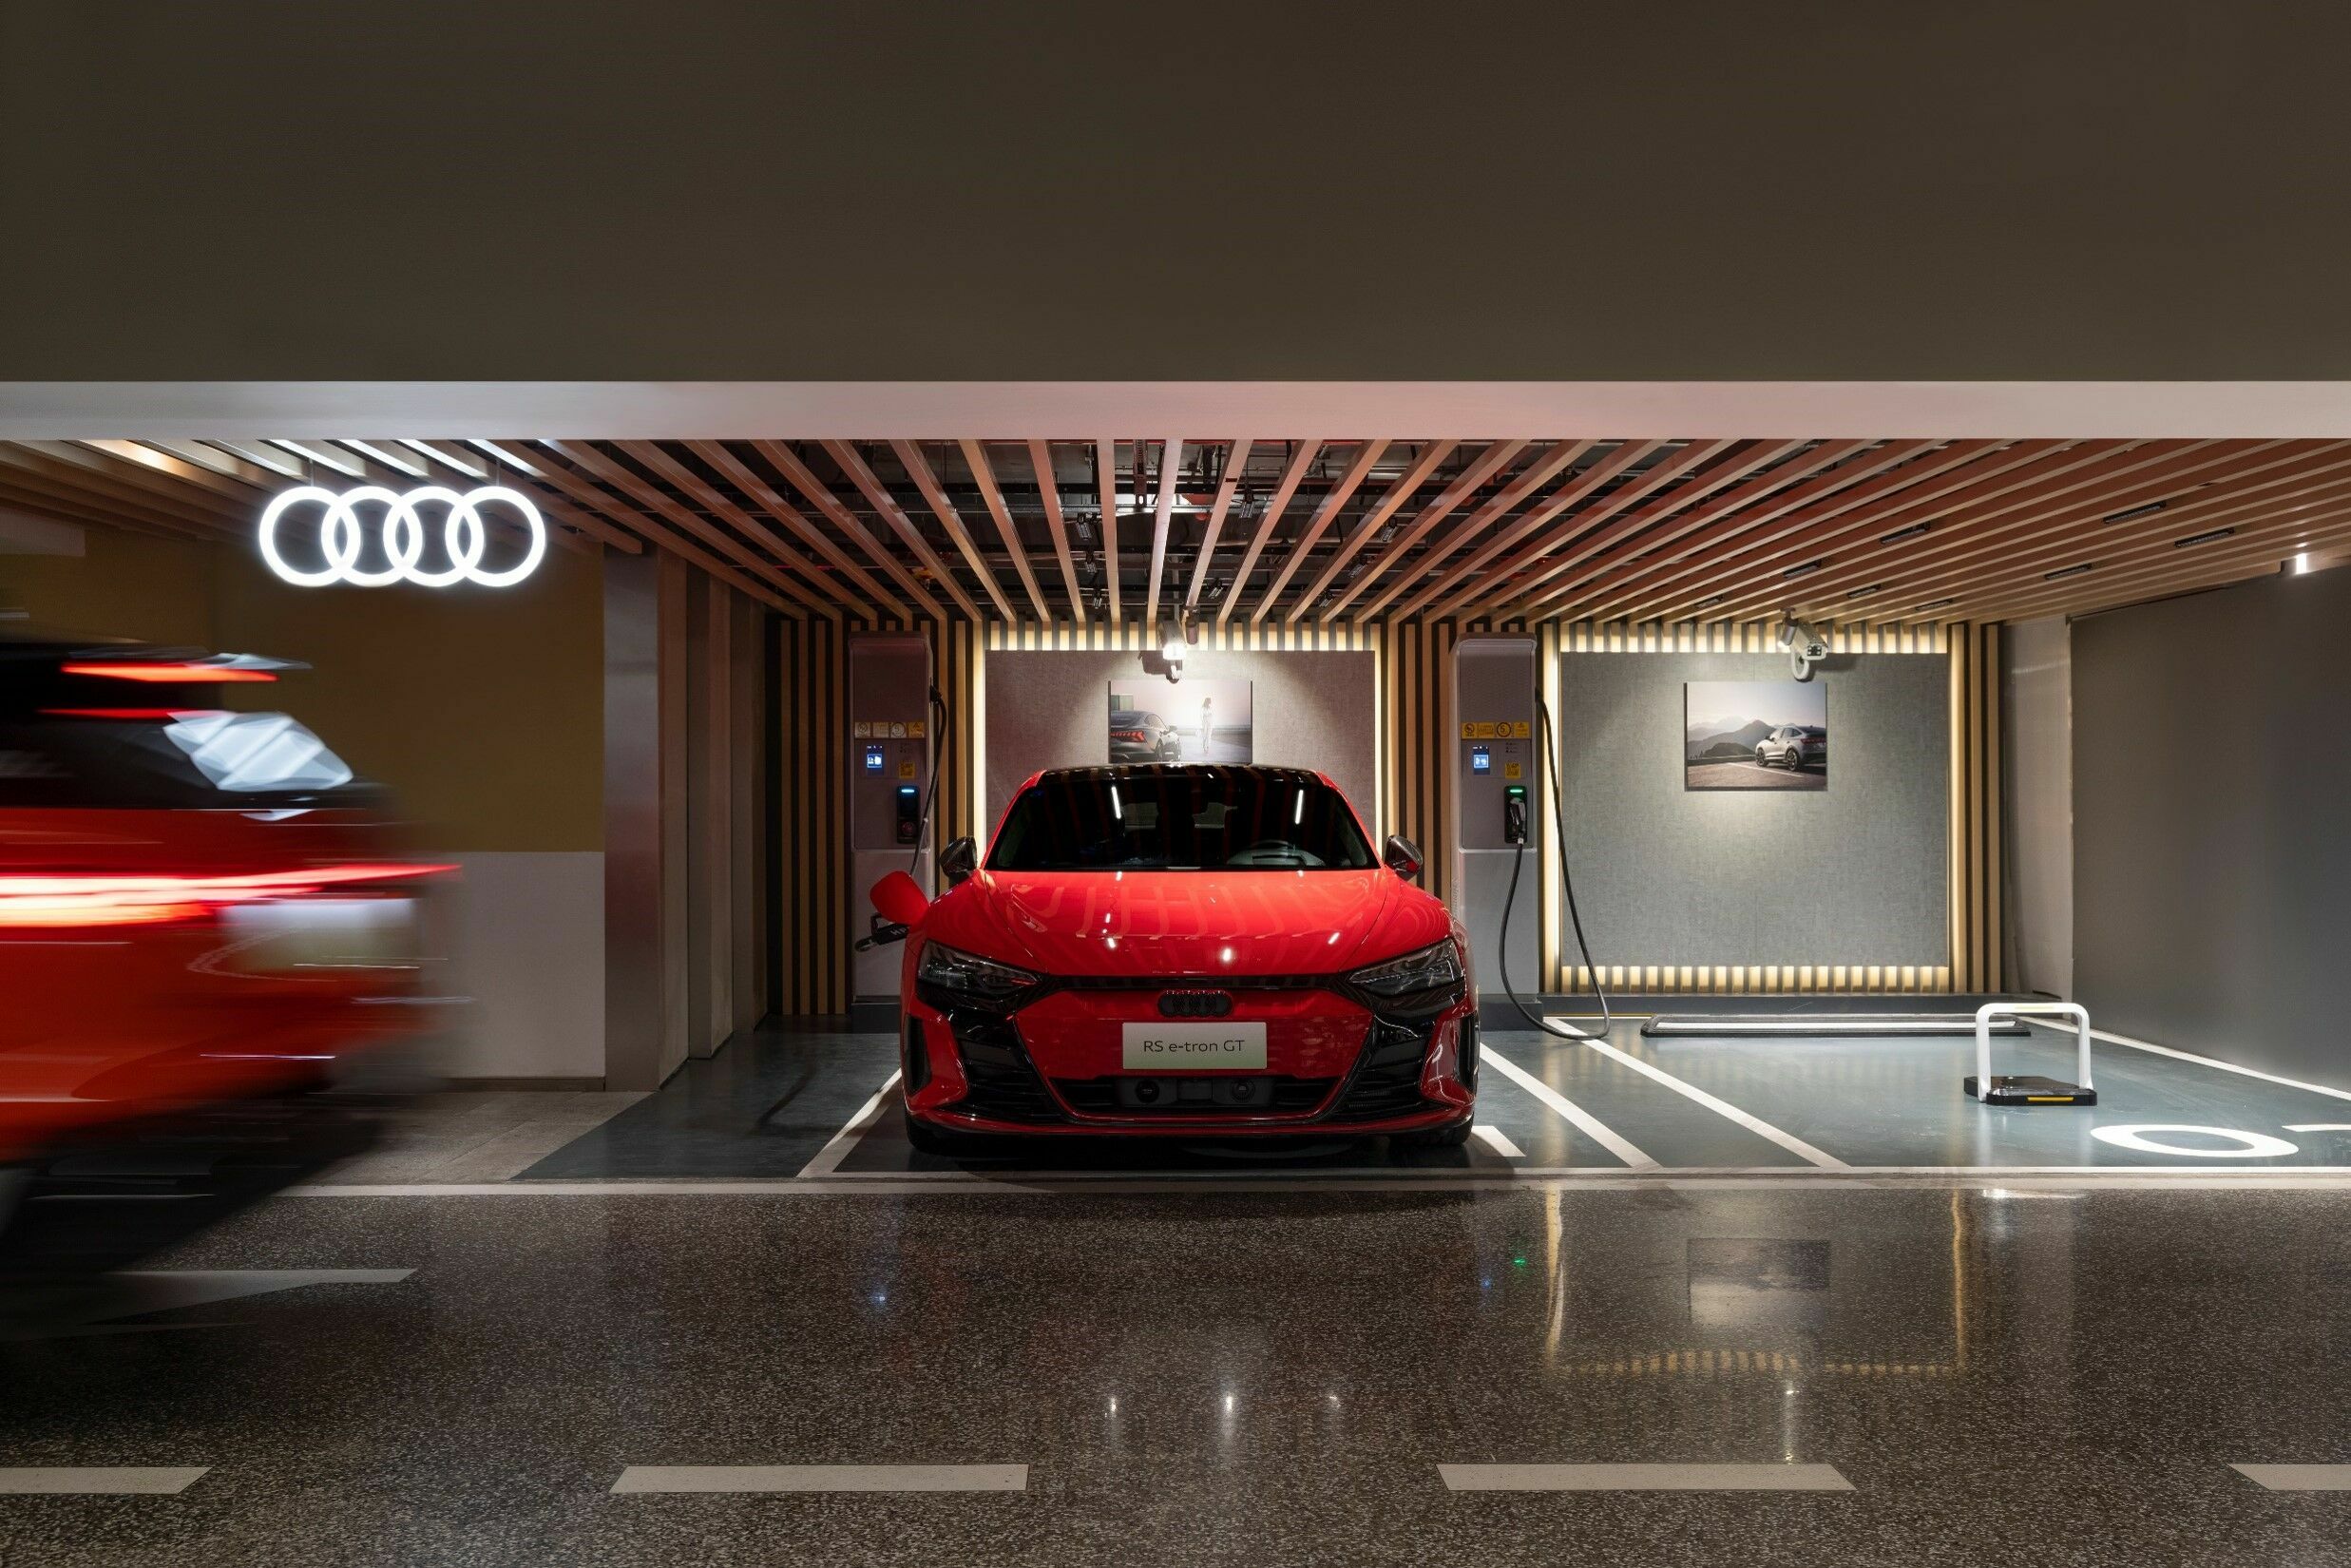 Audi ergänzt sein chinesisches Premium-Ökosystem für Elektromobilität durch exklusive Audi-Ladestationen